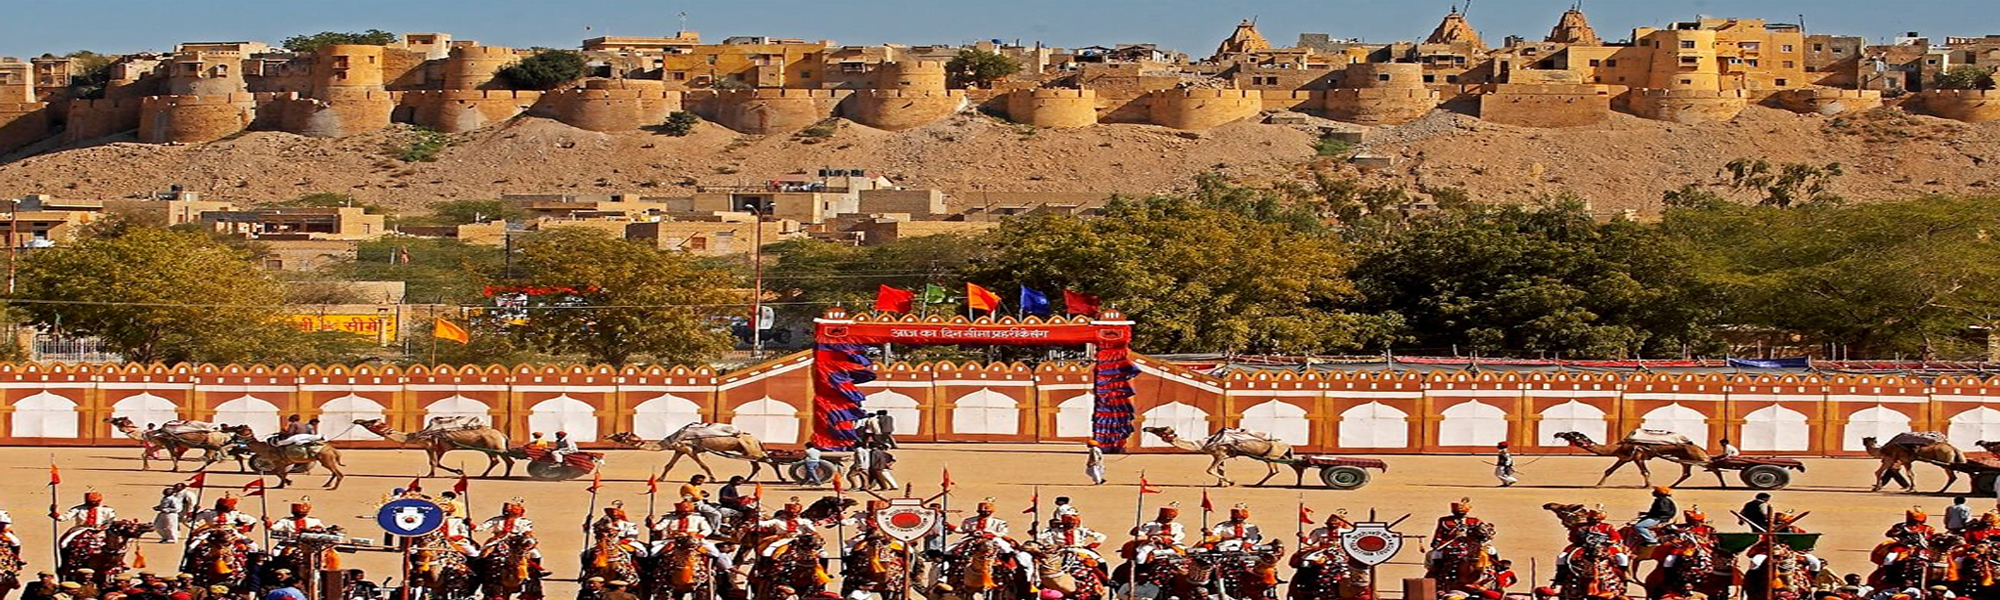 Desert Festival Budget Tours in India 